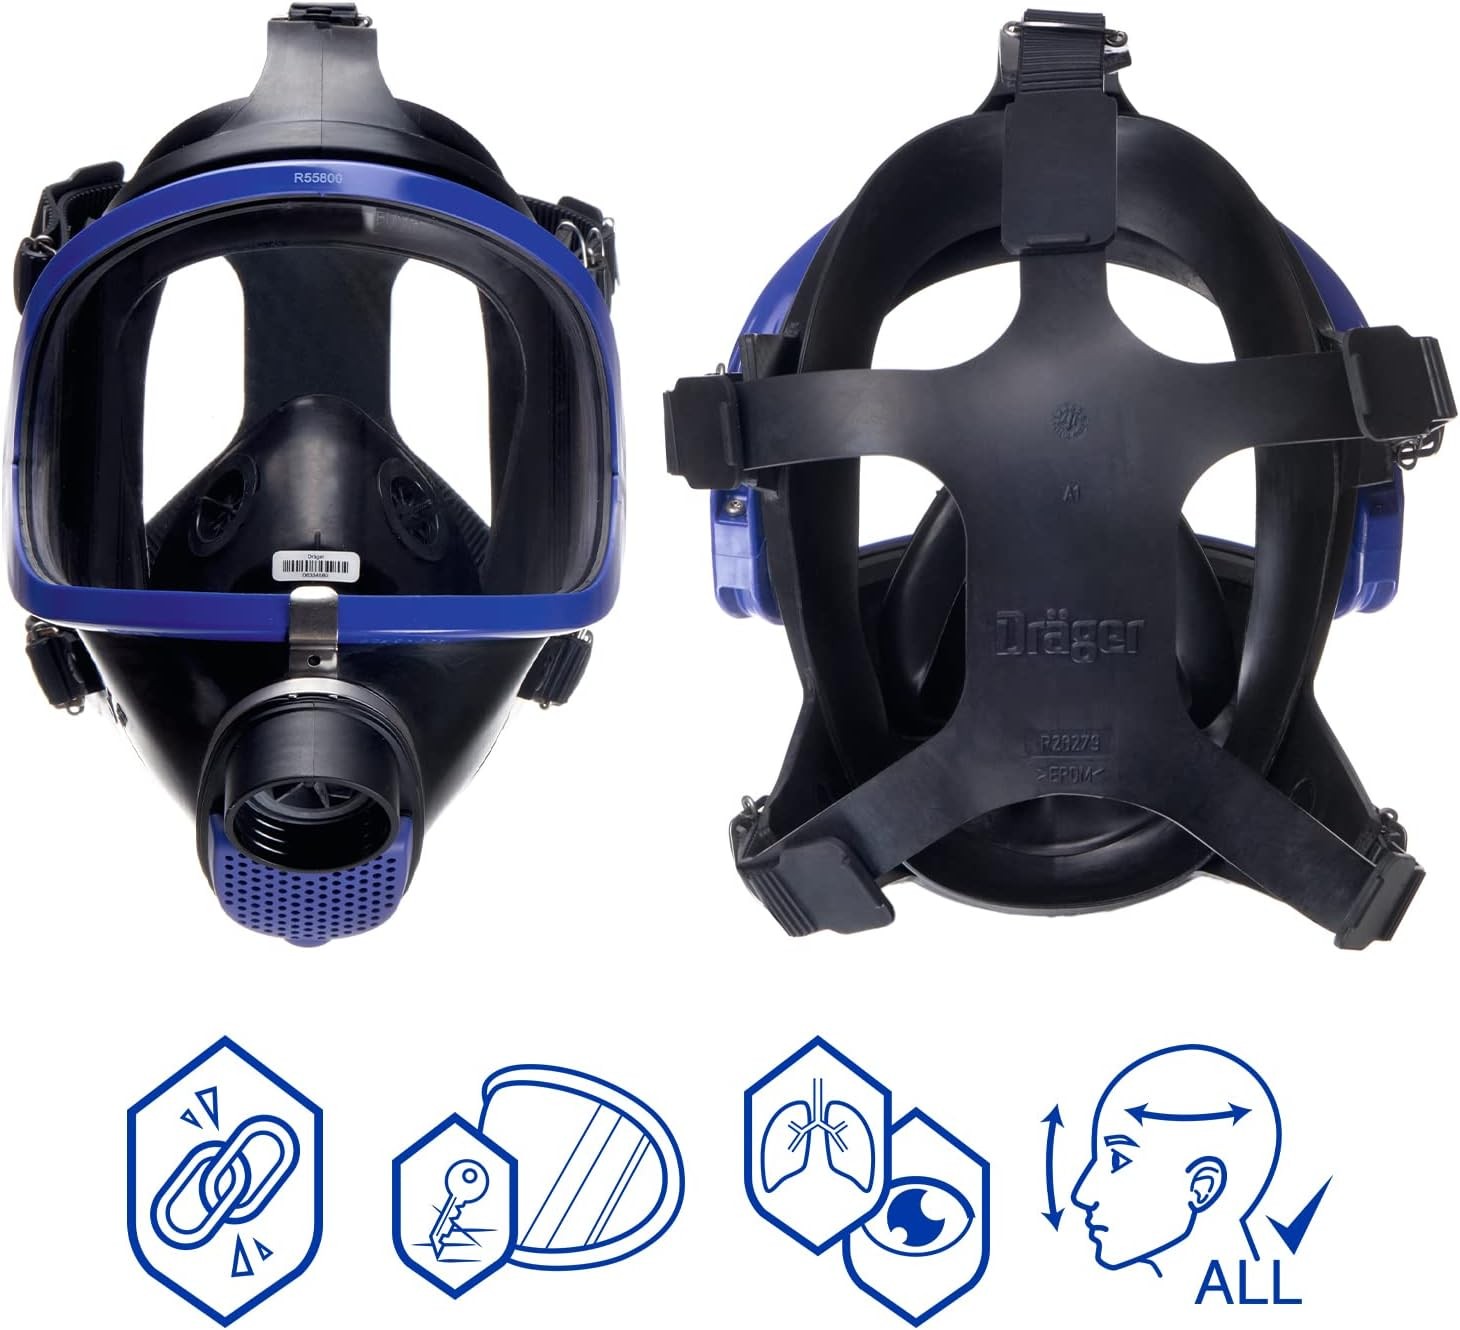 Masque complet Dräger X-plore 6300 EPDM/PMMA avec visière en plexiglas, filtre unique